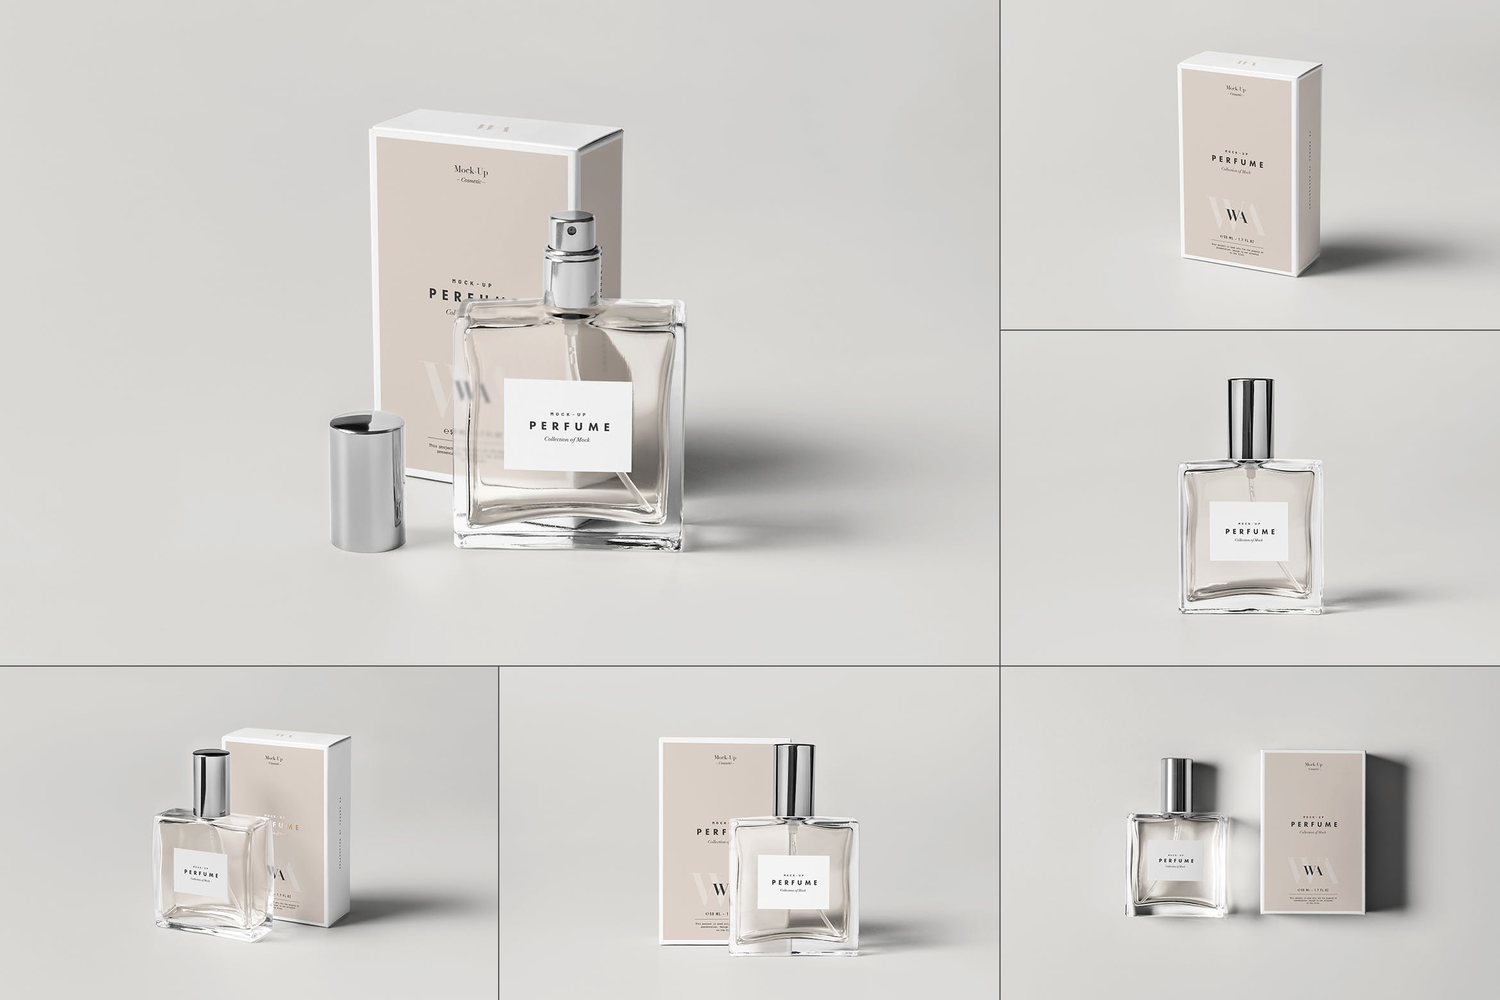 4763 奢侈品高级香水包装盒空白贴图ps样机素材设计模板 Perfume Mock-up@GOOODME.COM